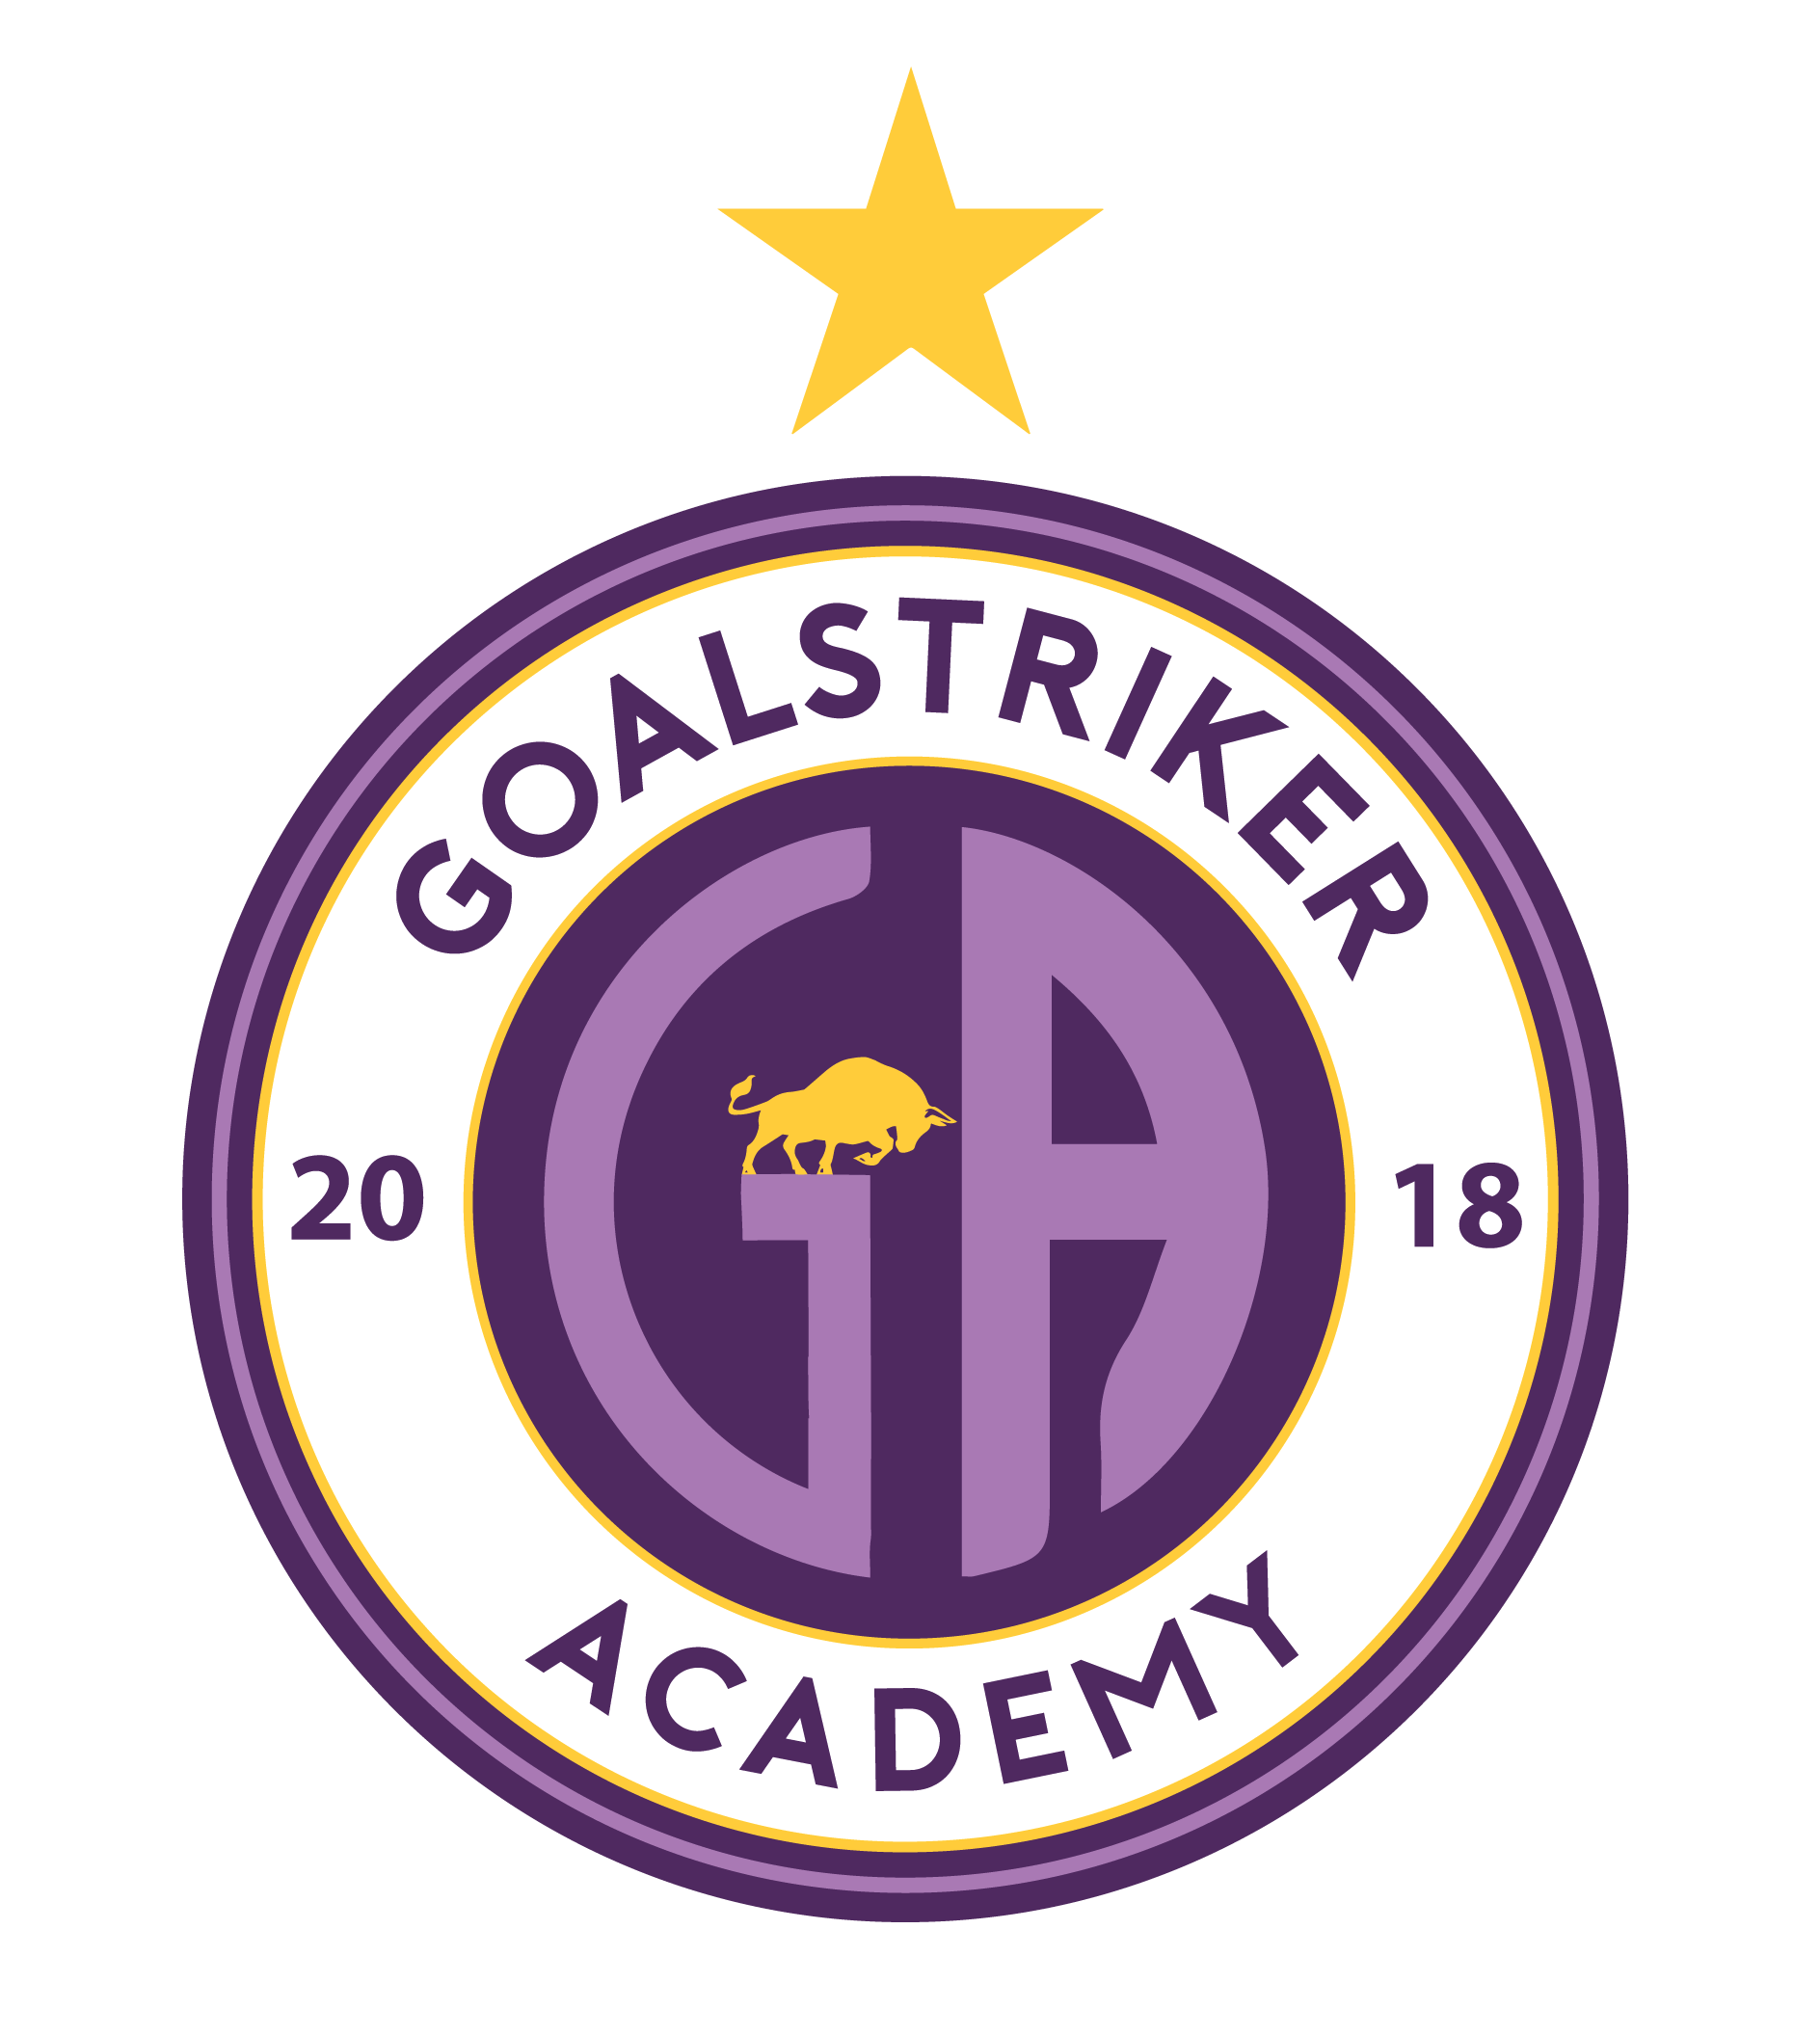 Goalstriker Academy logo